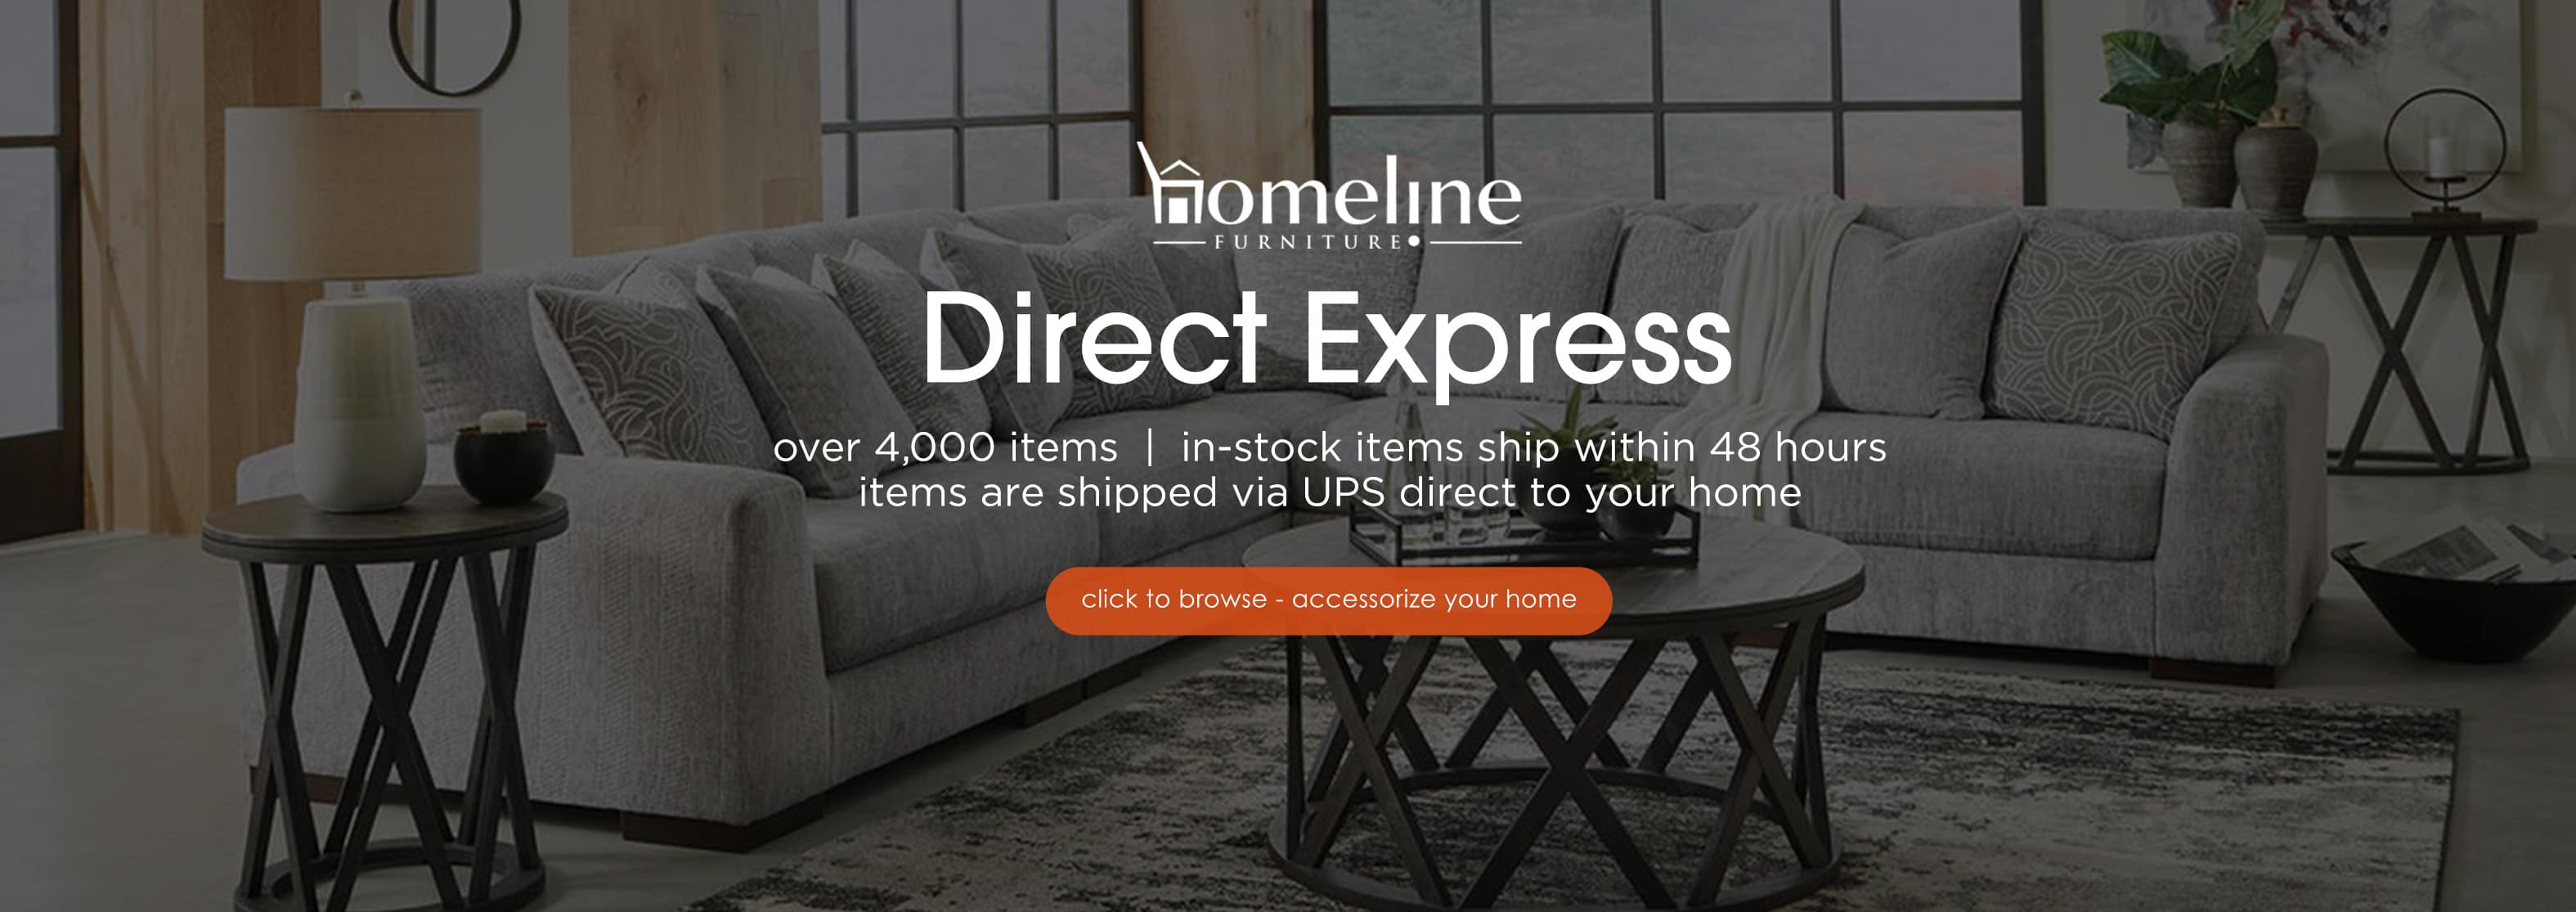 Homeline-direct-express-banner